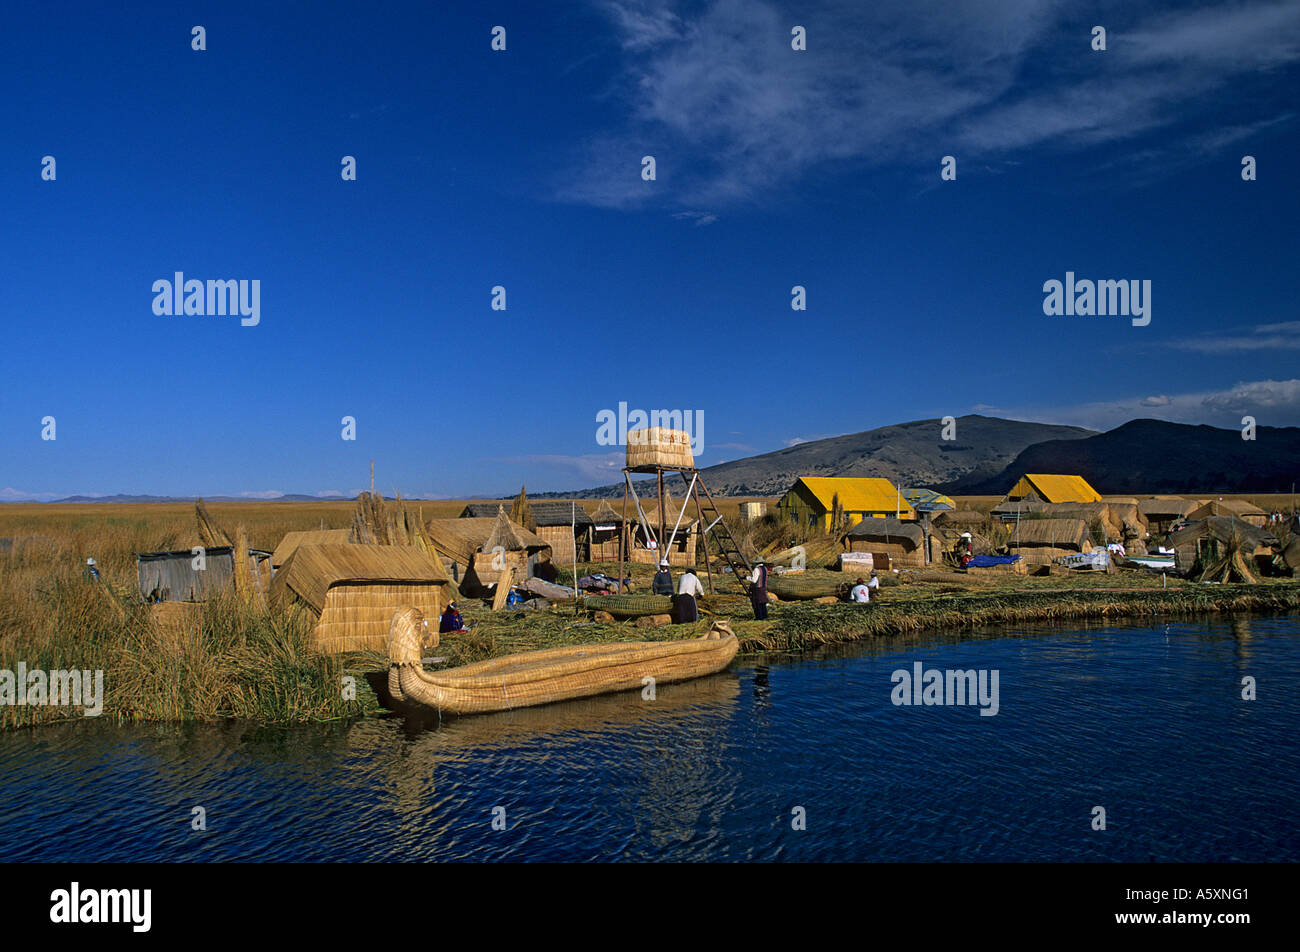 L'île flottante sur le lac Titicaca - Puno (Pérou). Ile flottante sur le lac Titicaca - Puno (Pérou). Banque D'Images